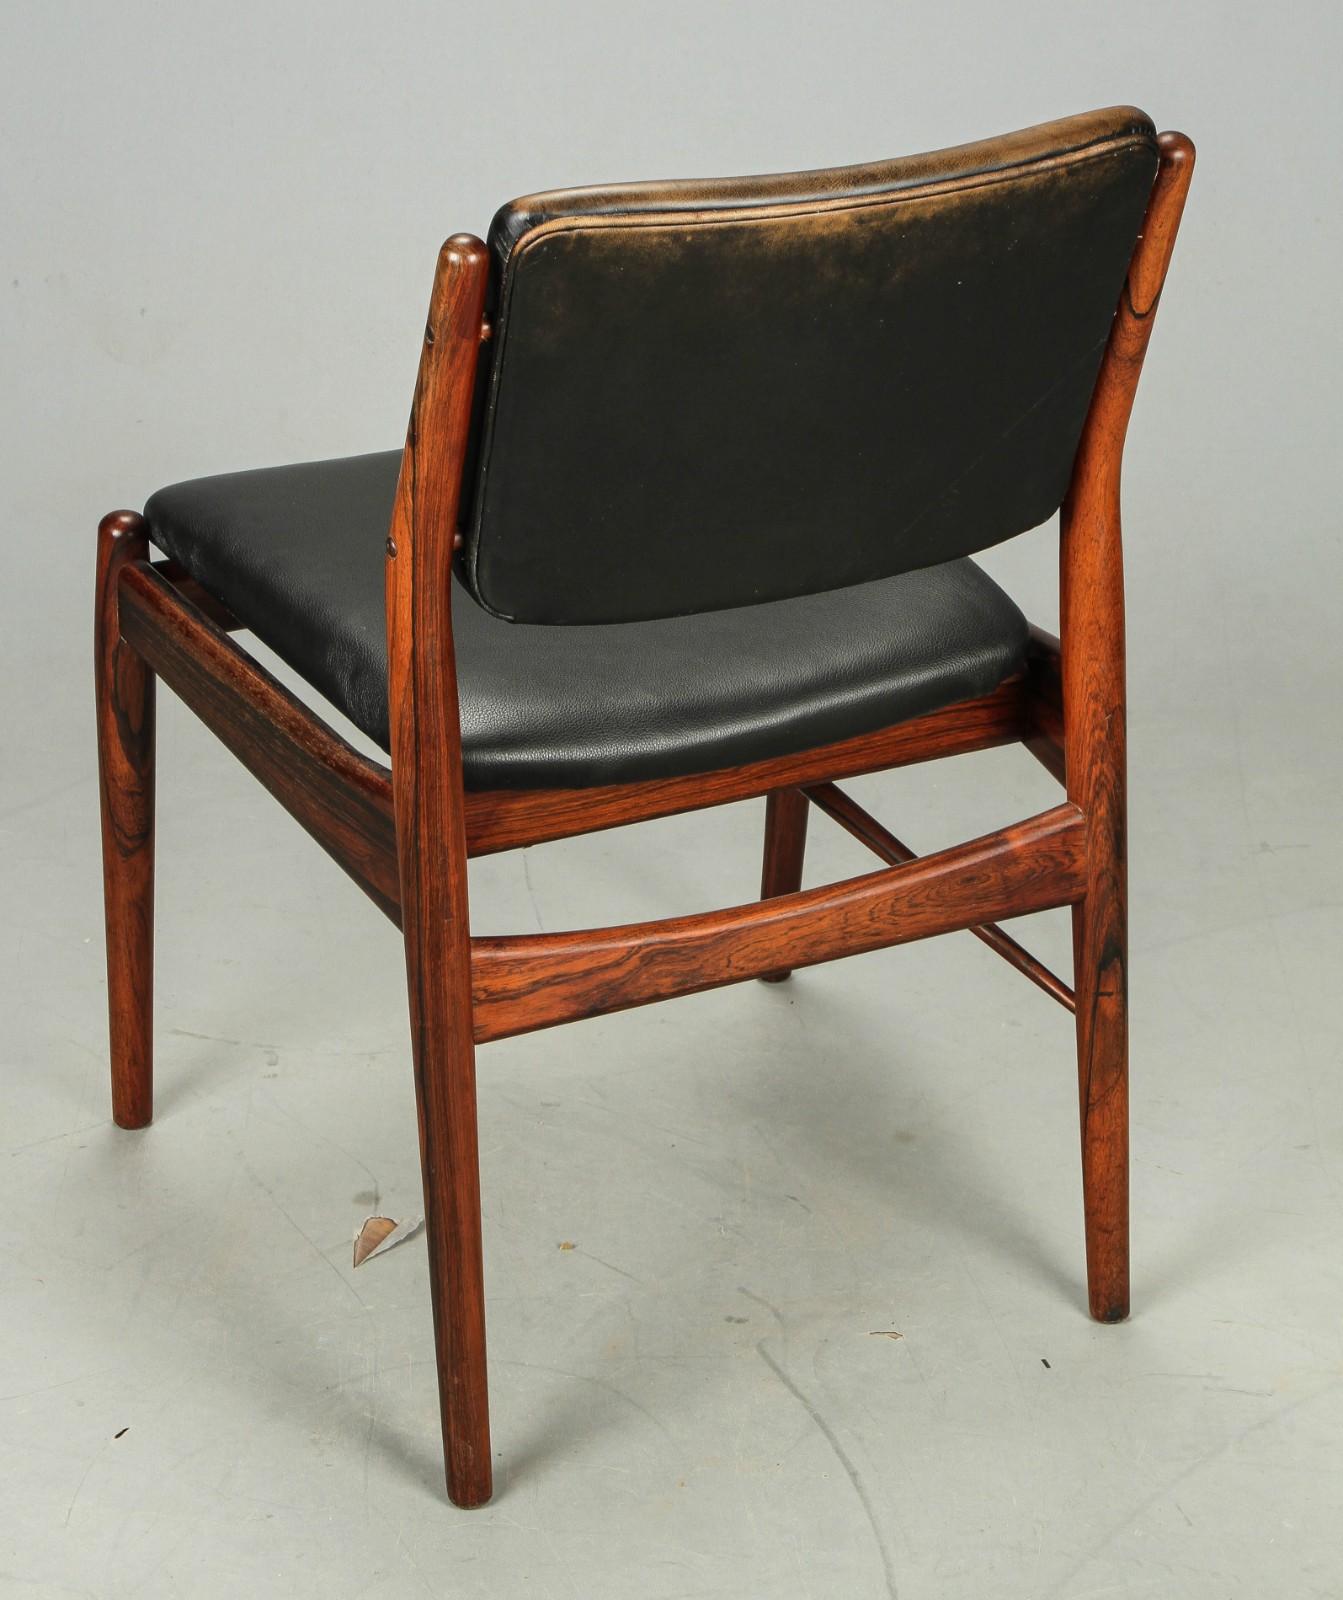 Cadre en bois dur recouvert de cuir brun. Conçu par Arne Vodder pour Helge Sibast Møbler dans les années 1960. État d'origine non restauré.